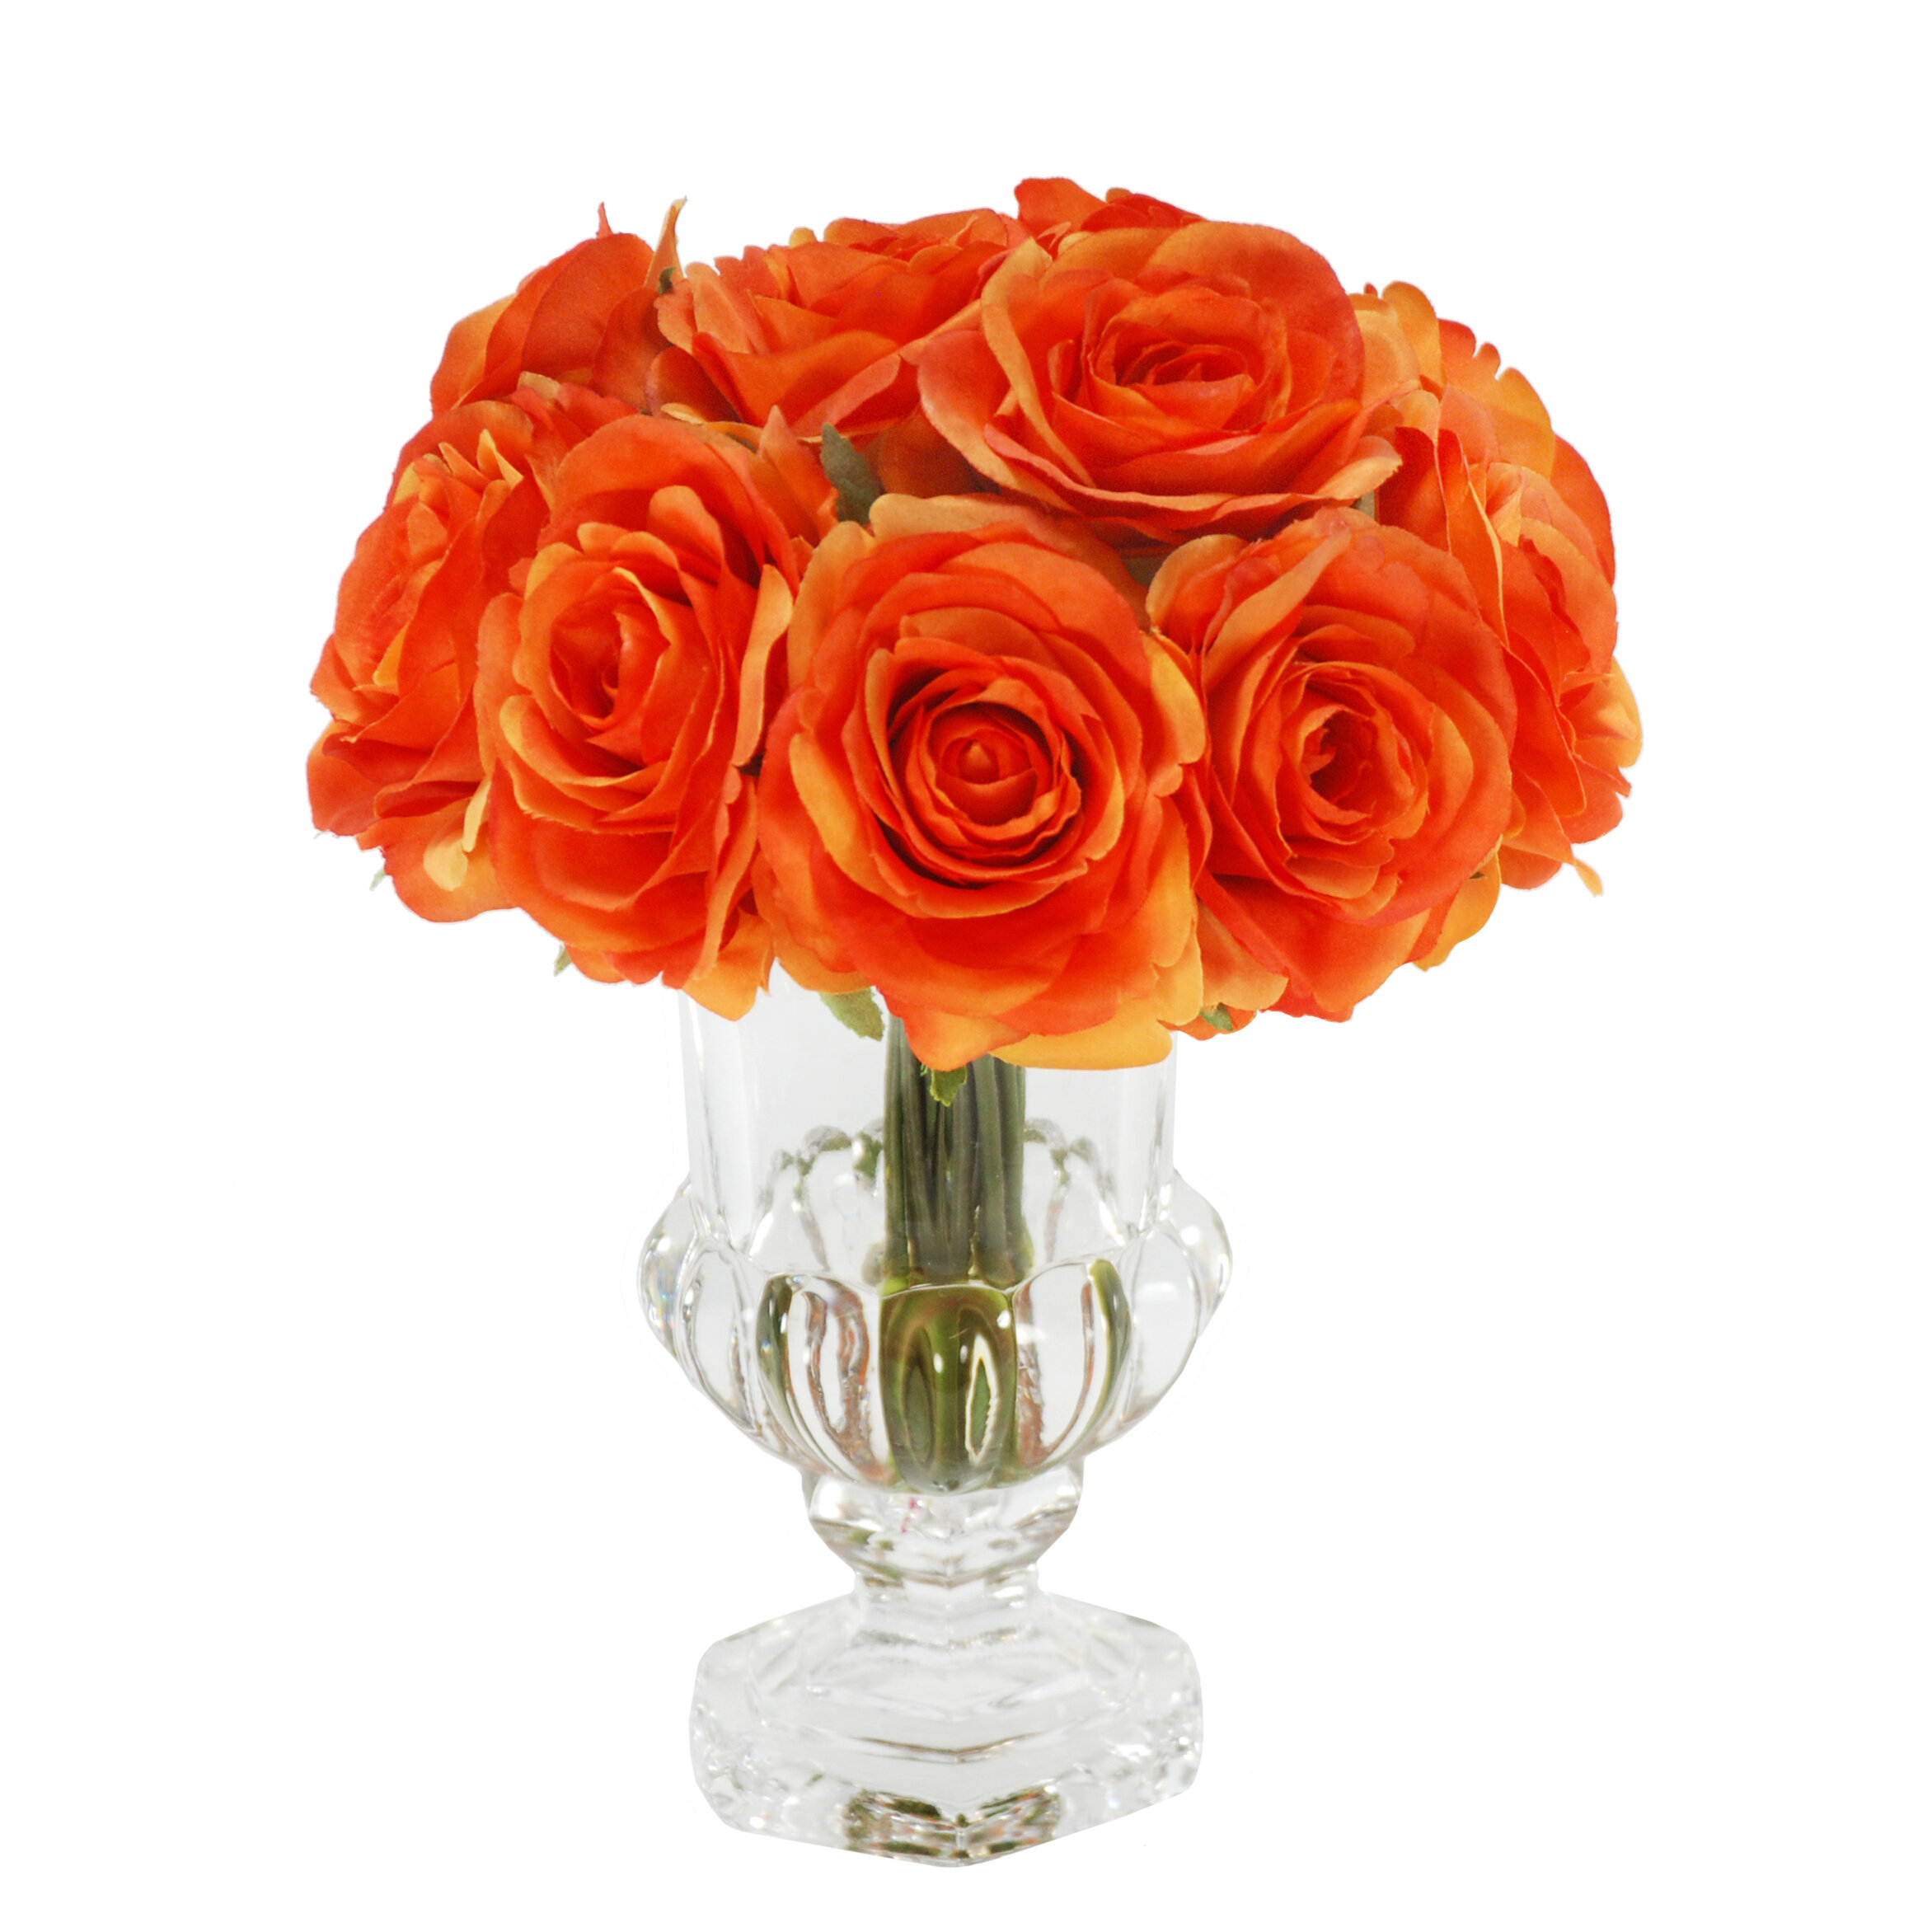 Rose Mini Floral Arrangement in Glass Urn | Joss & Main